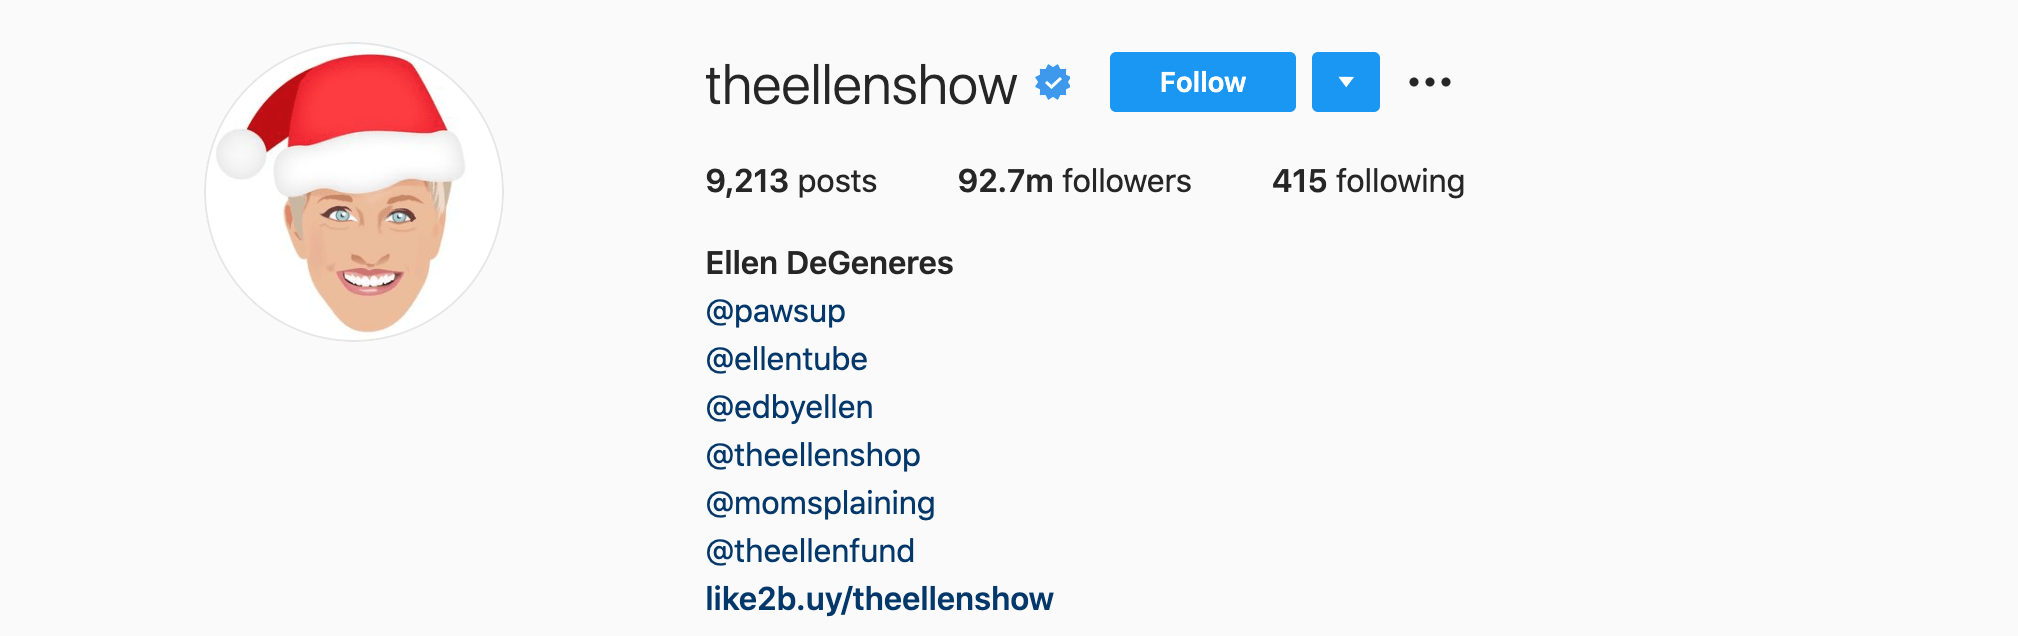 Top Instagram Influencers - ELLEN DEGENERES